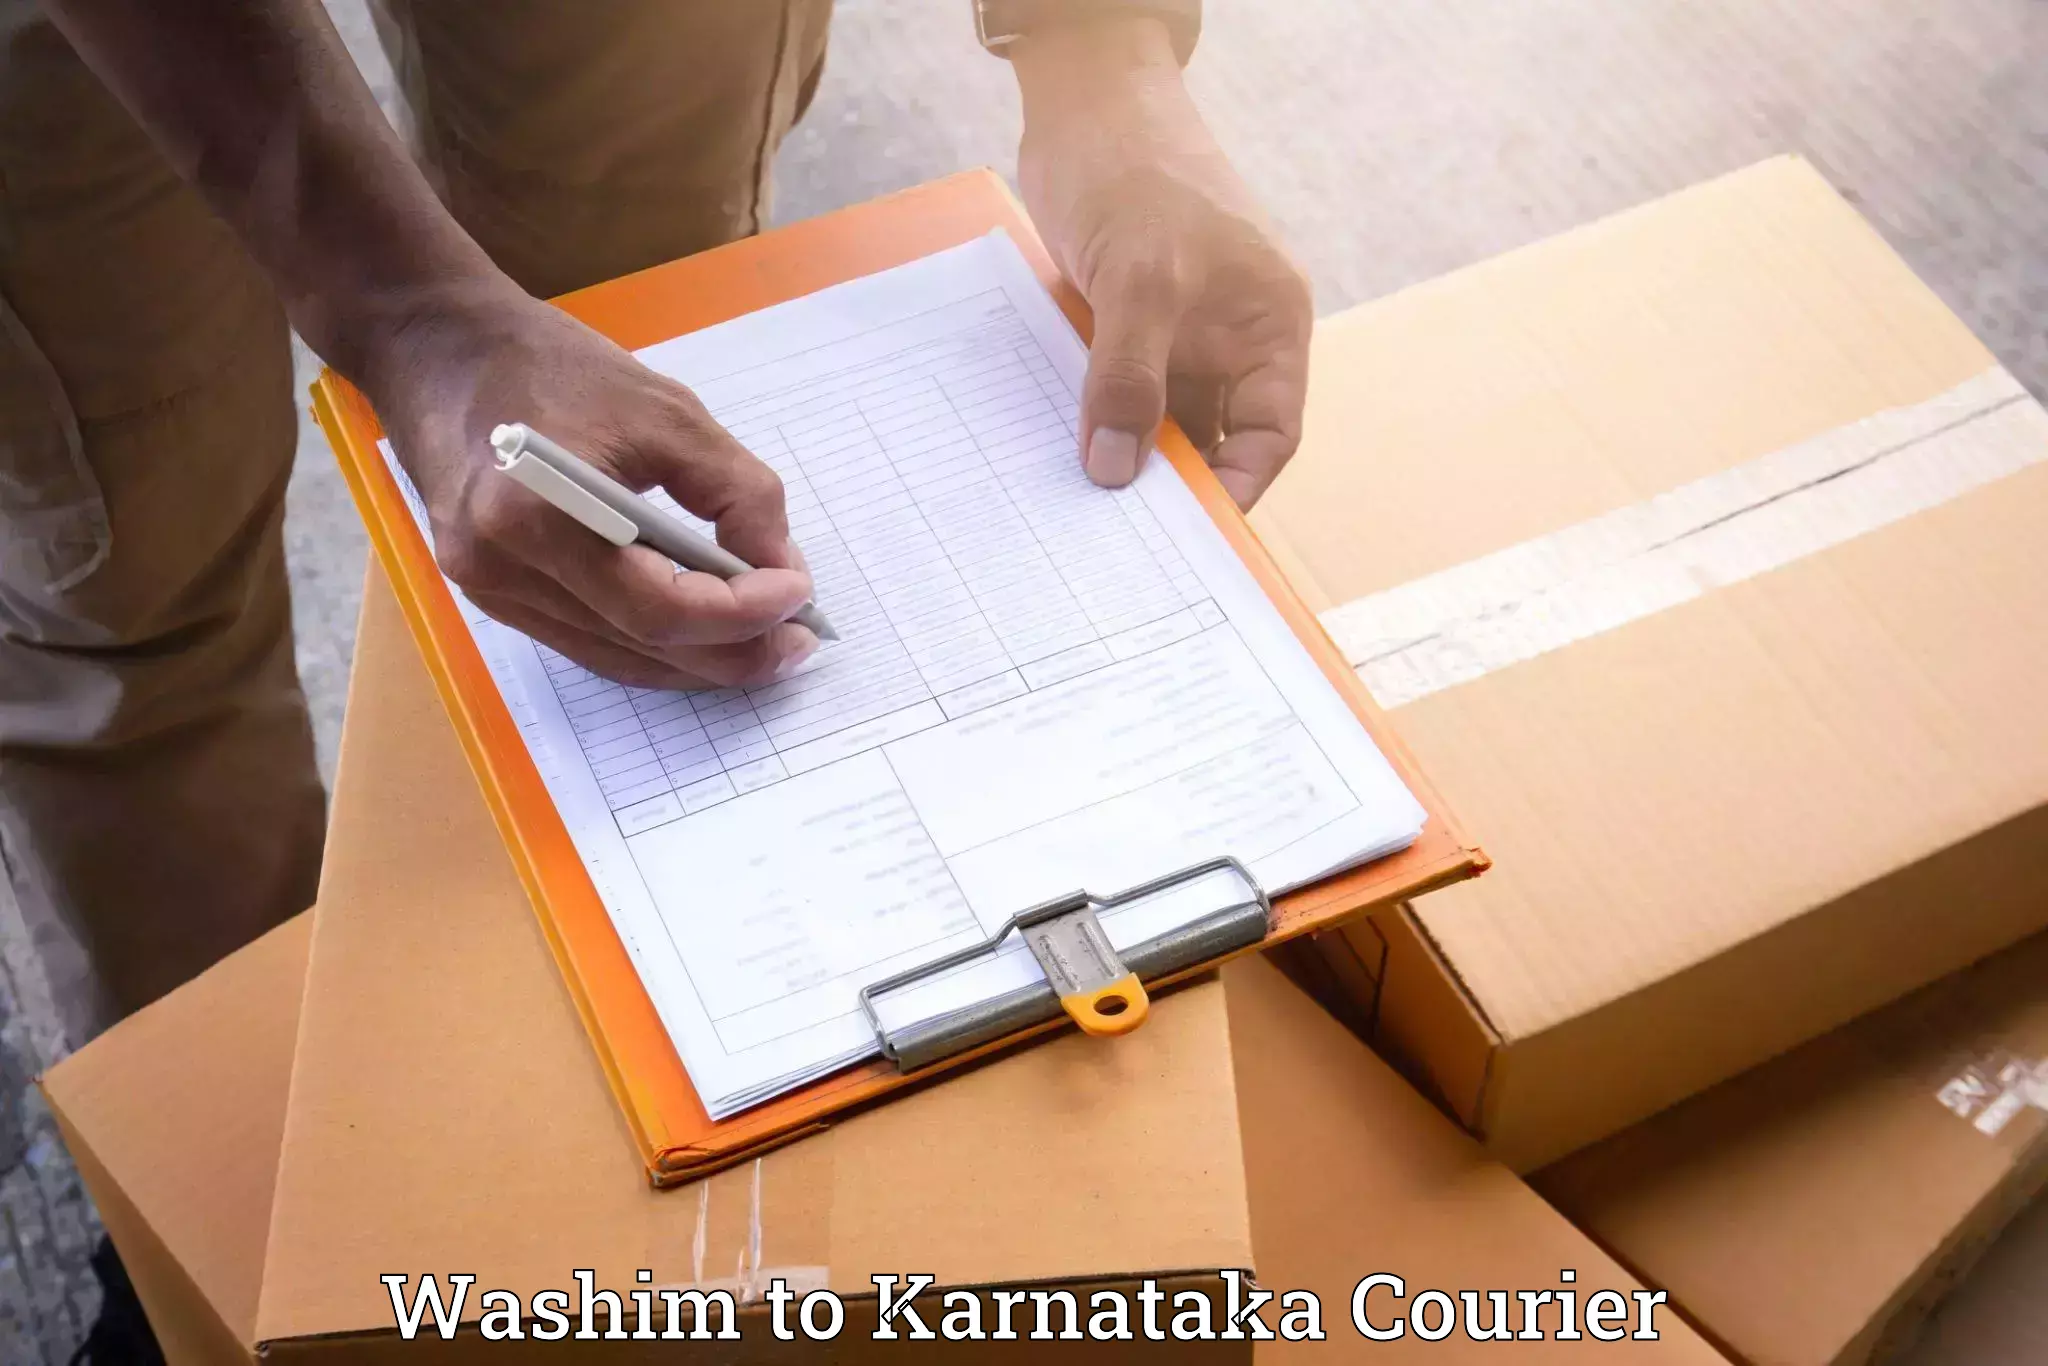 Furniture moving experts Washim to Karnataka